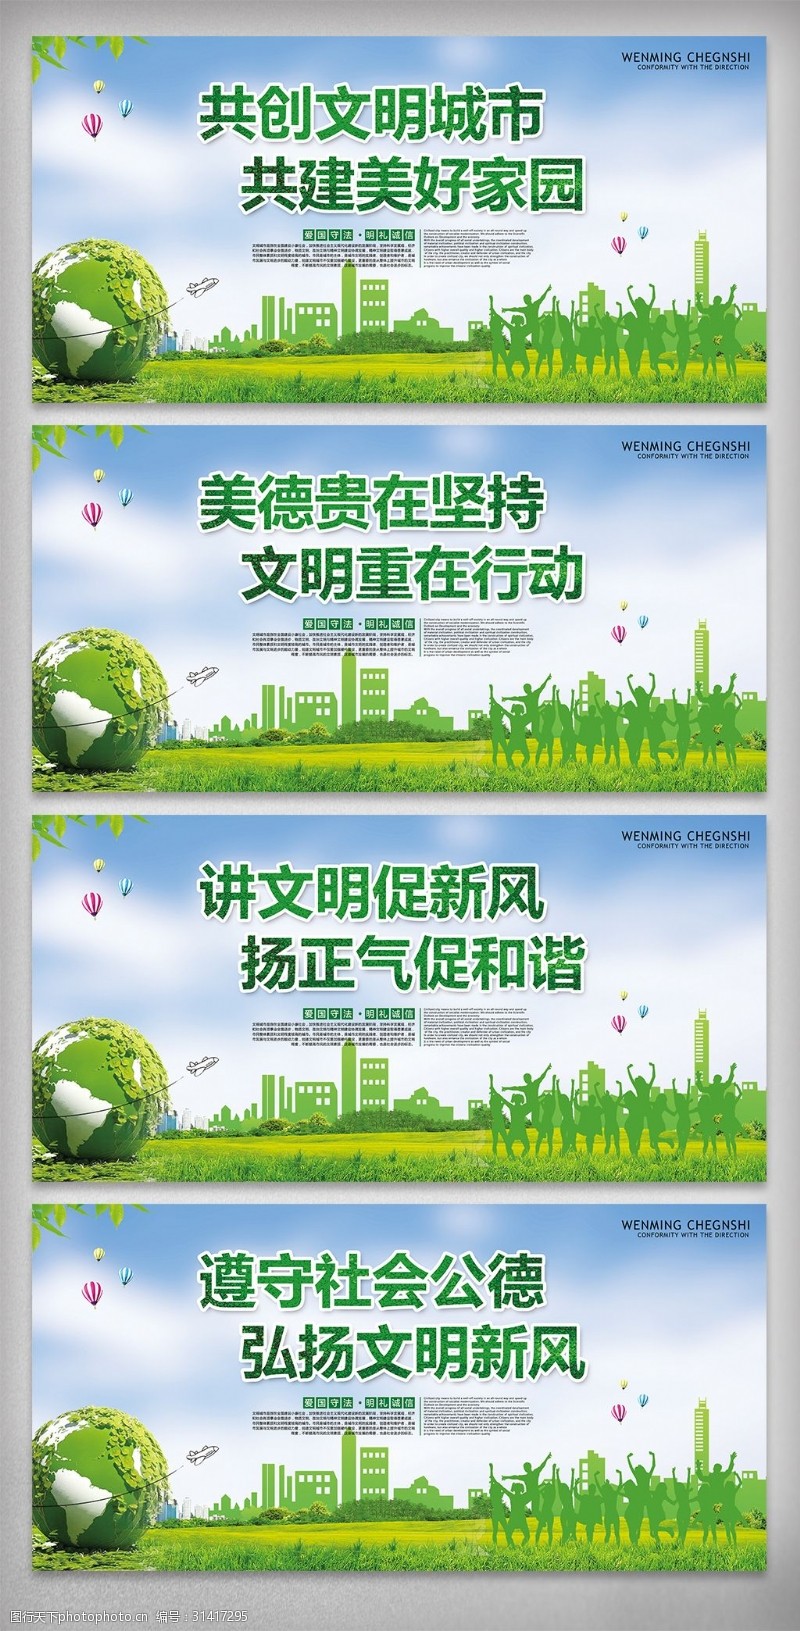 保建绿色低碳环保城市公益宣传挂画素材